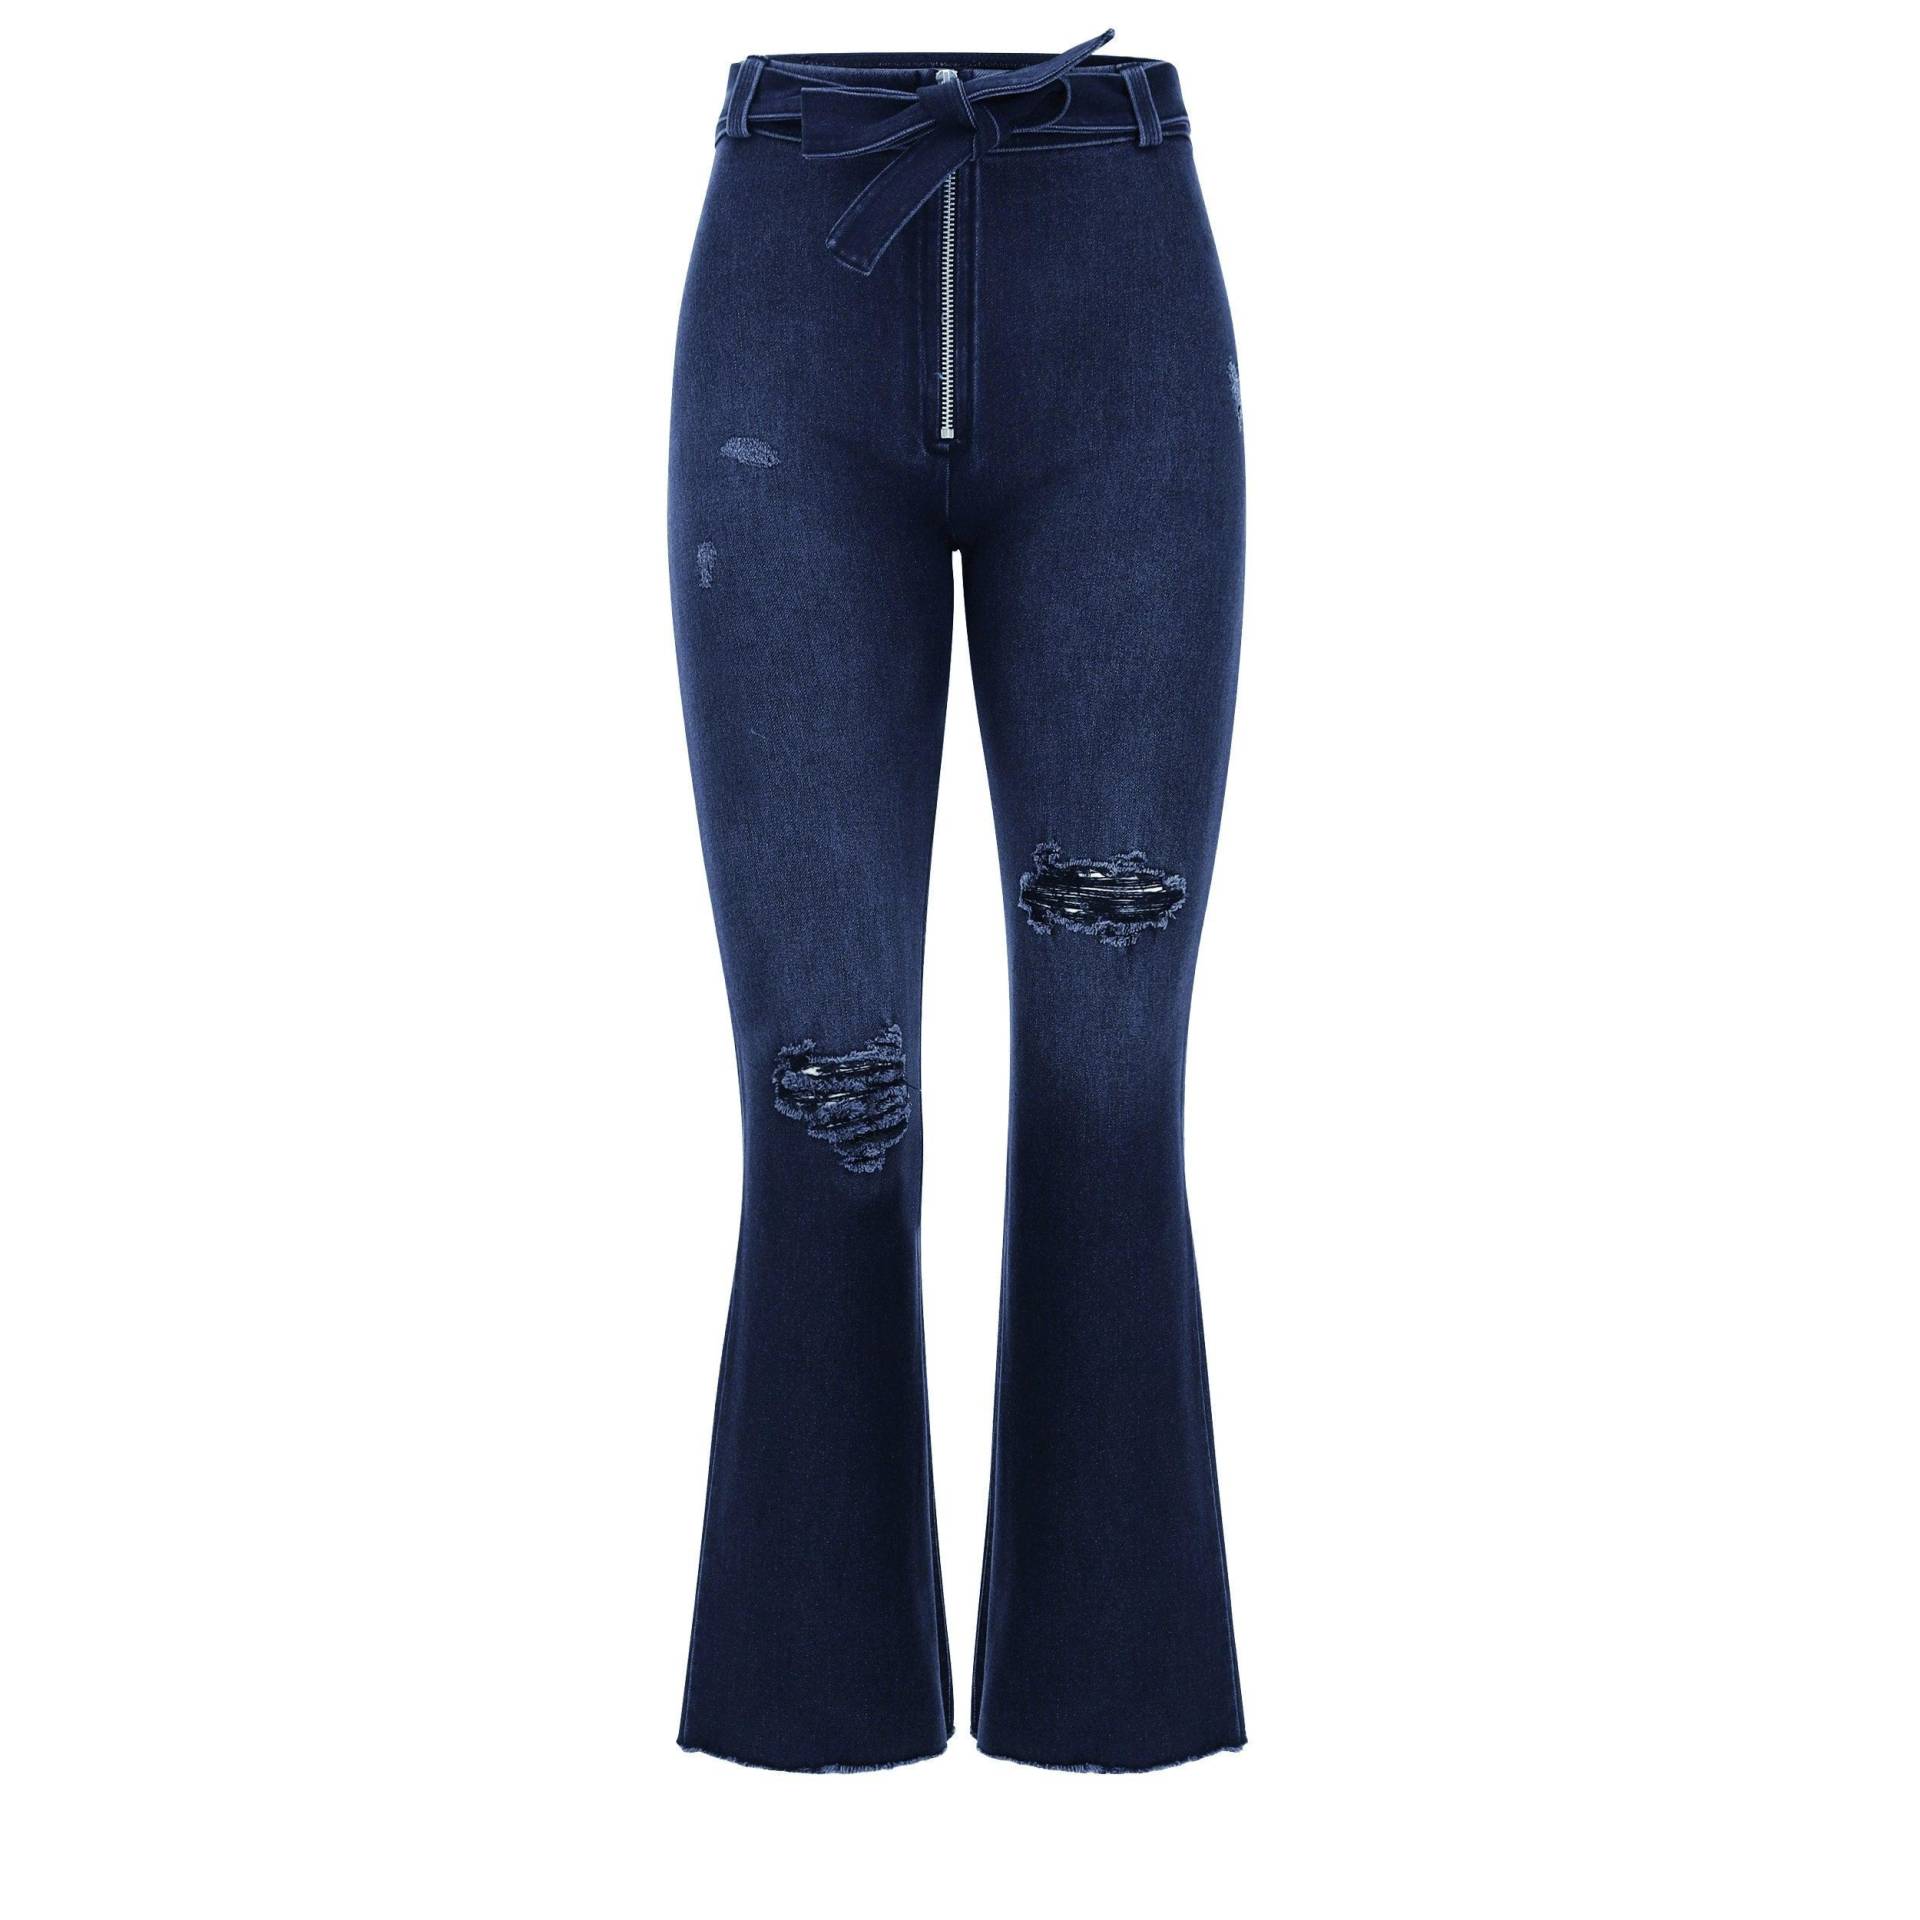 Wr.up® Snug Shaping Pants 7/8 Damen Blau Denim Dunkel XS von FREDDY